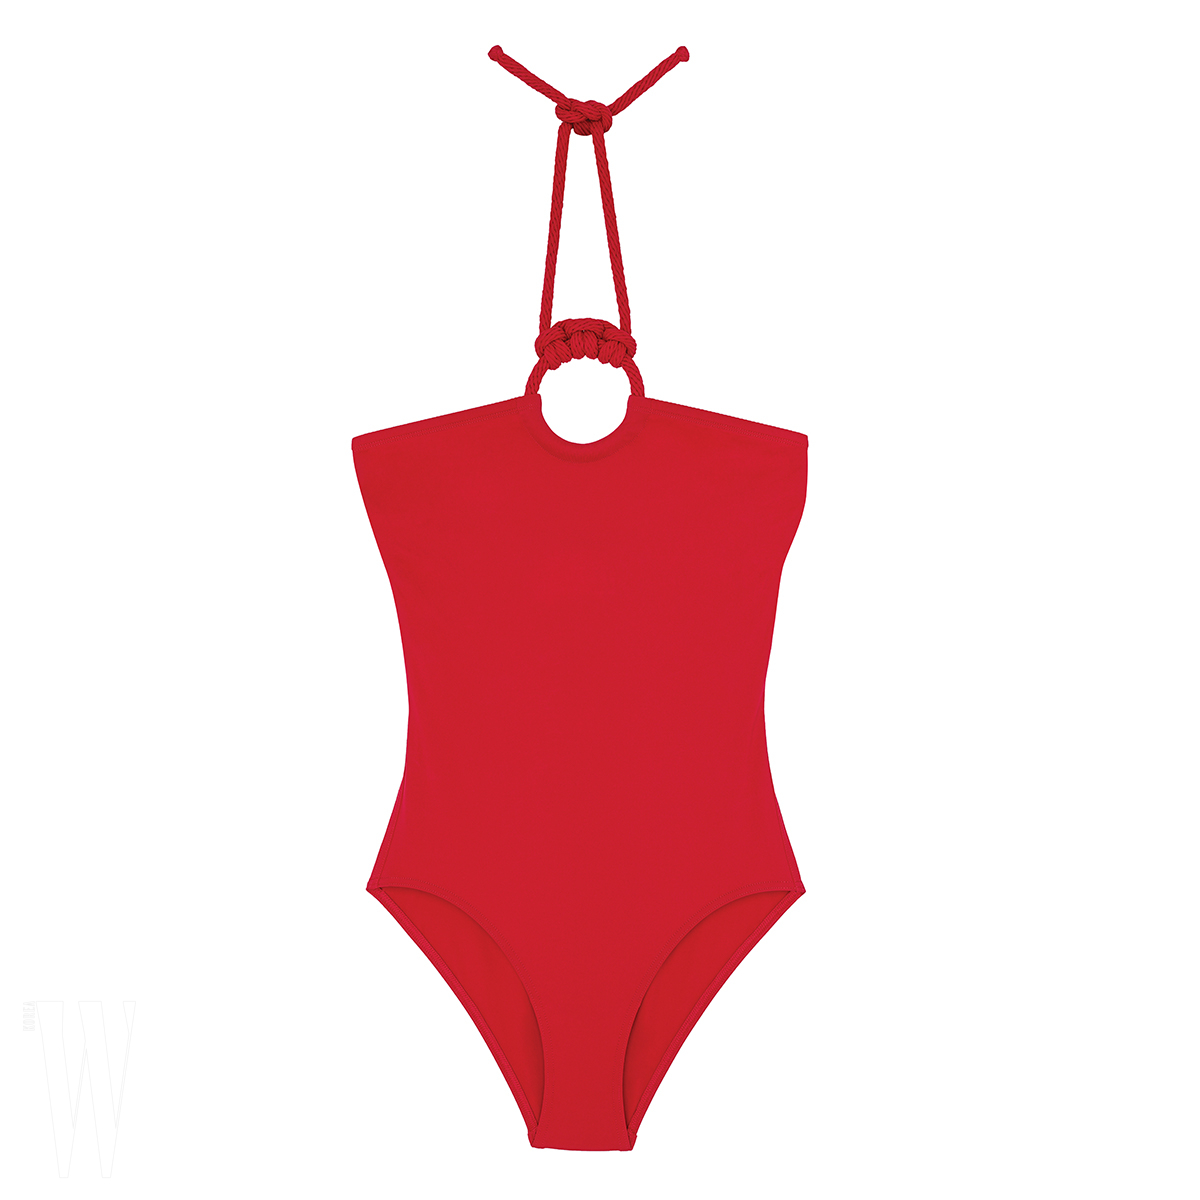 HERMES 타이 장식 홀터넥 수영복은 에르메스 제품. 가격 미정.